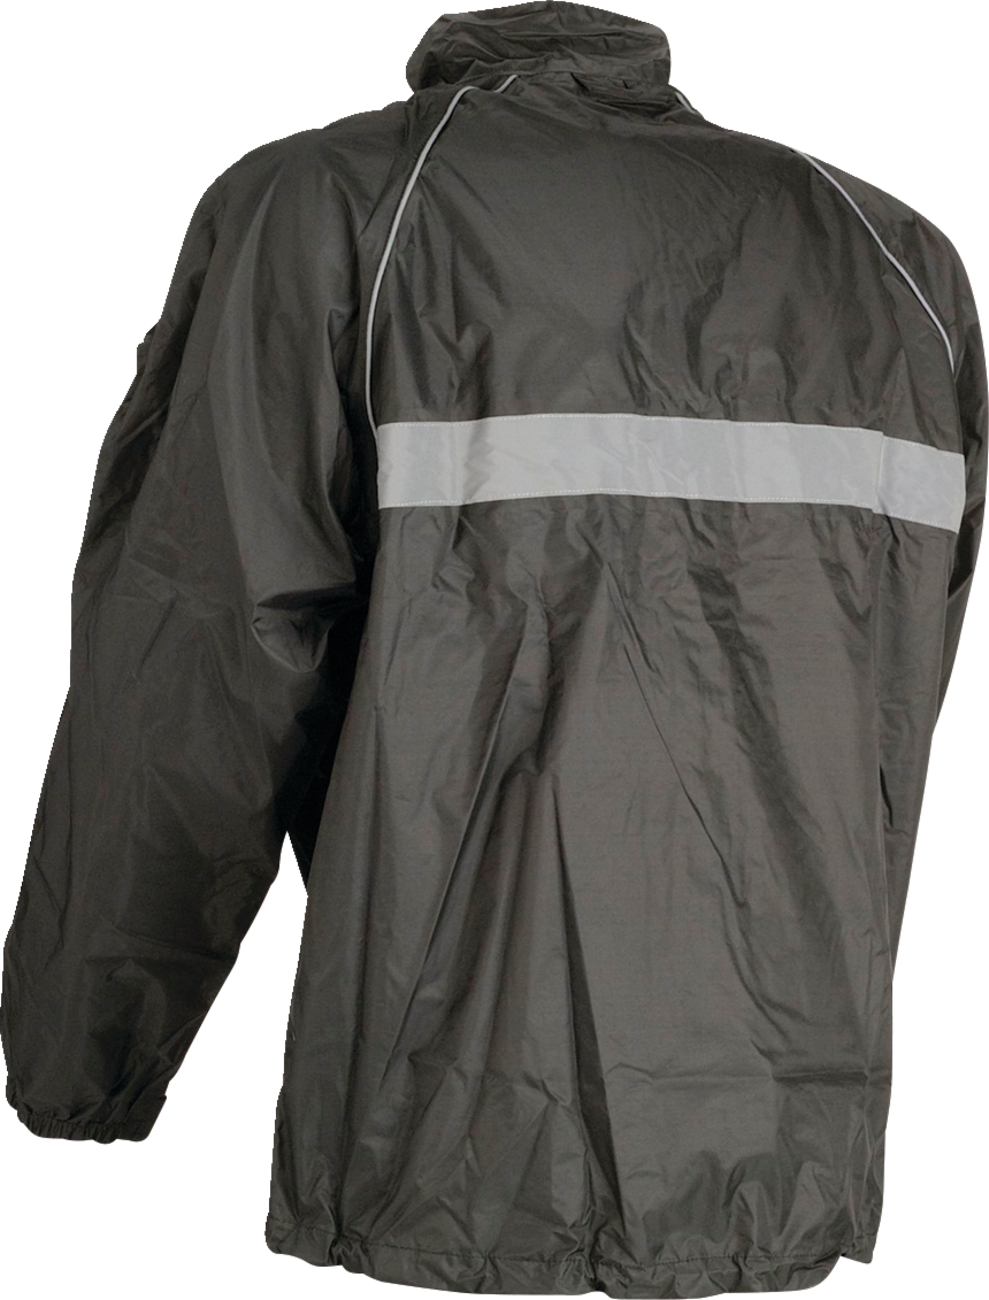 Z1R Waterproof Jacket - Black - Medium 2854-0333